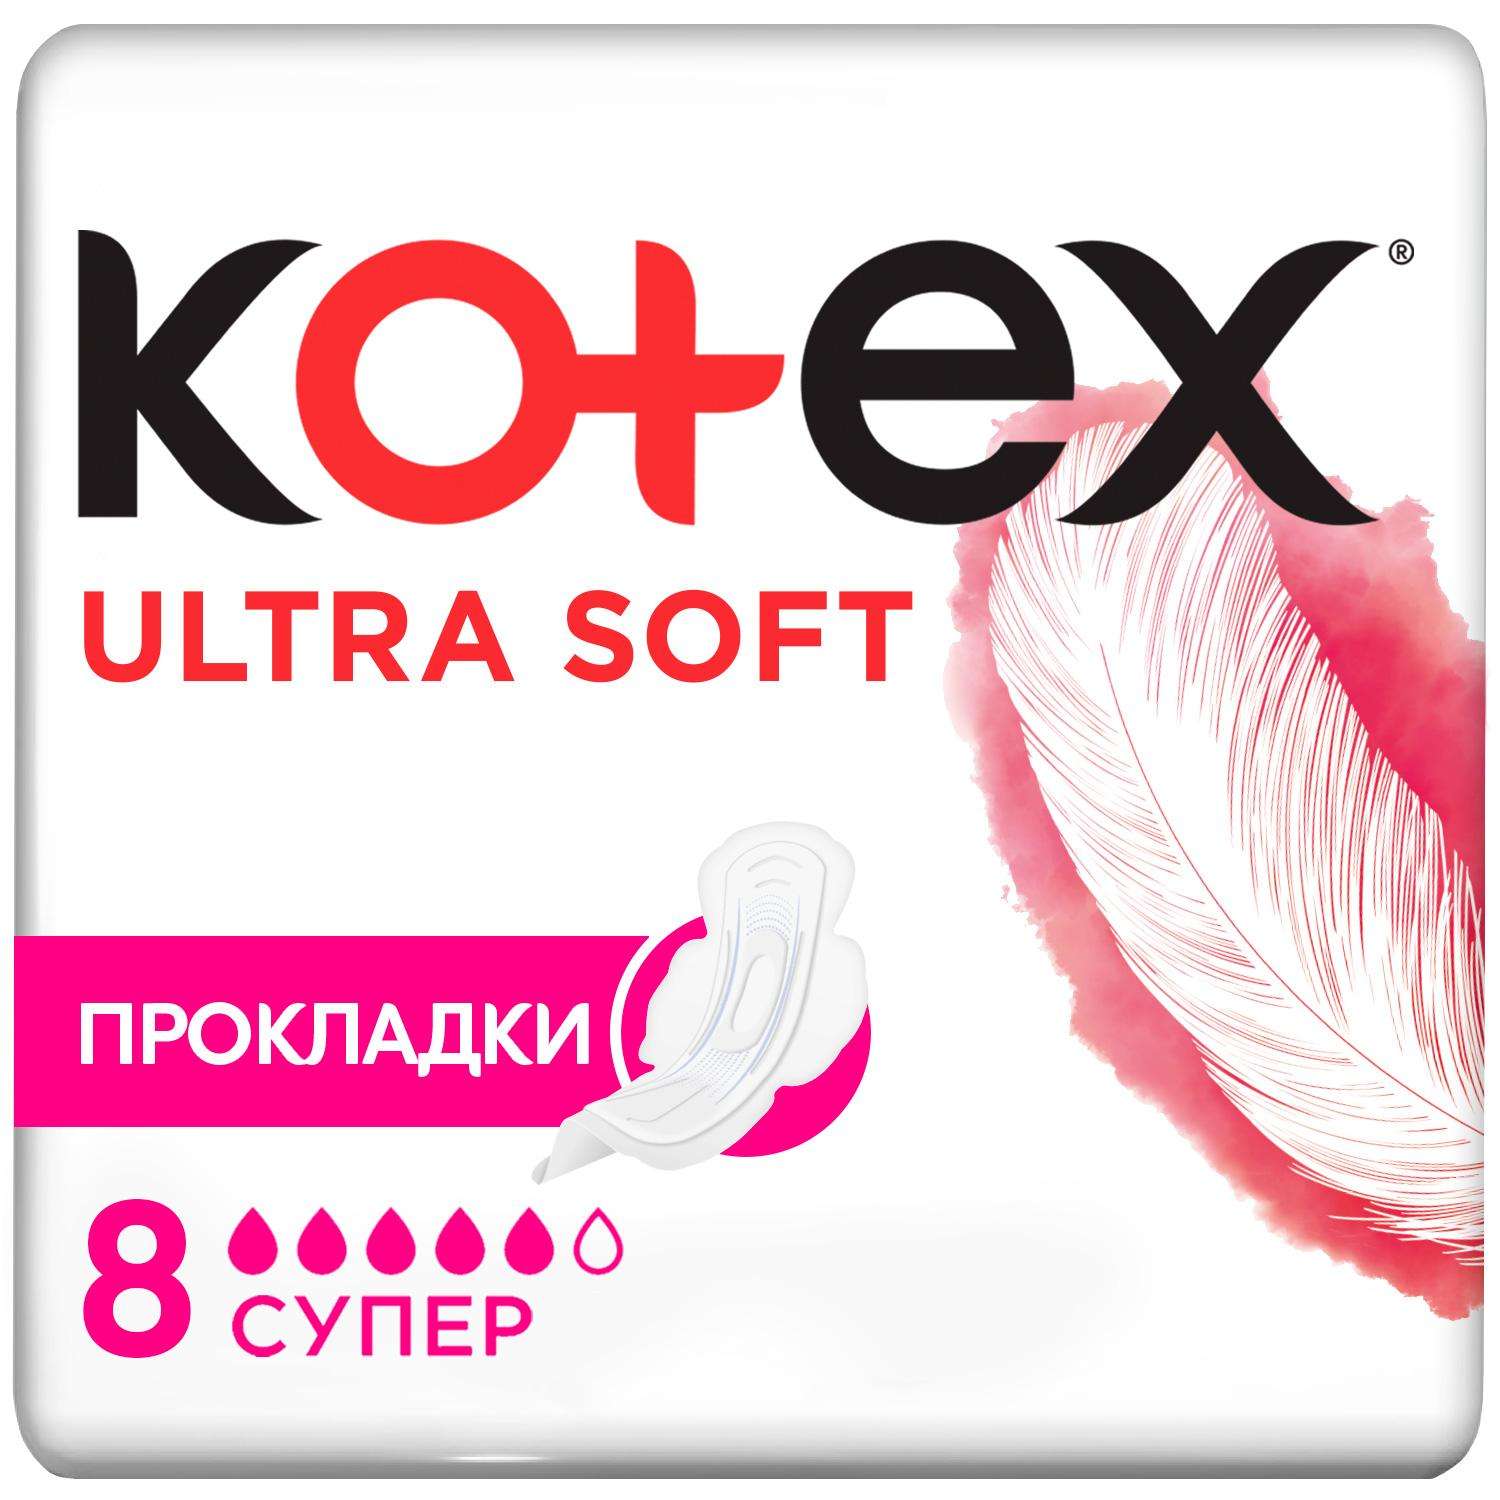 Прокладки KOTEX Ultra Soft Super 8шт - фото 2